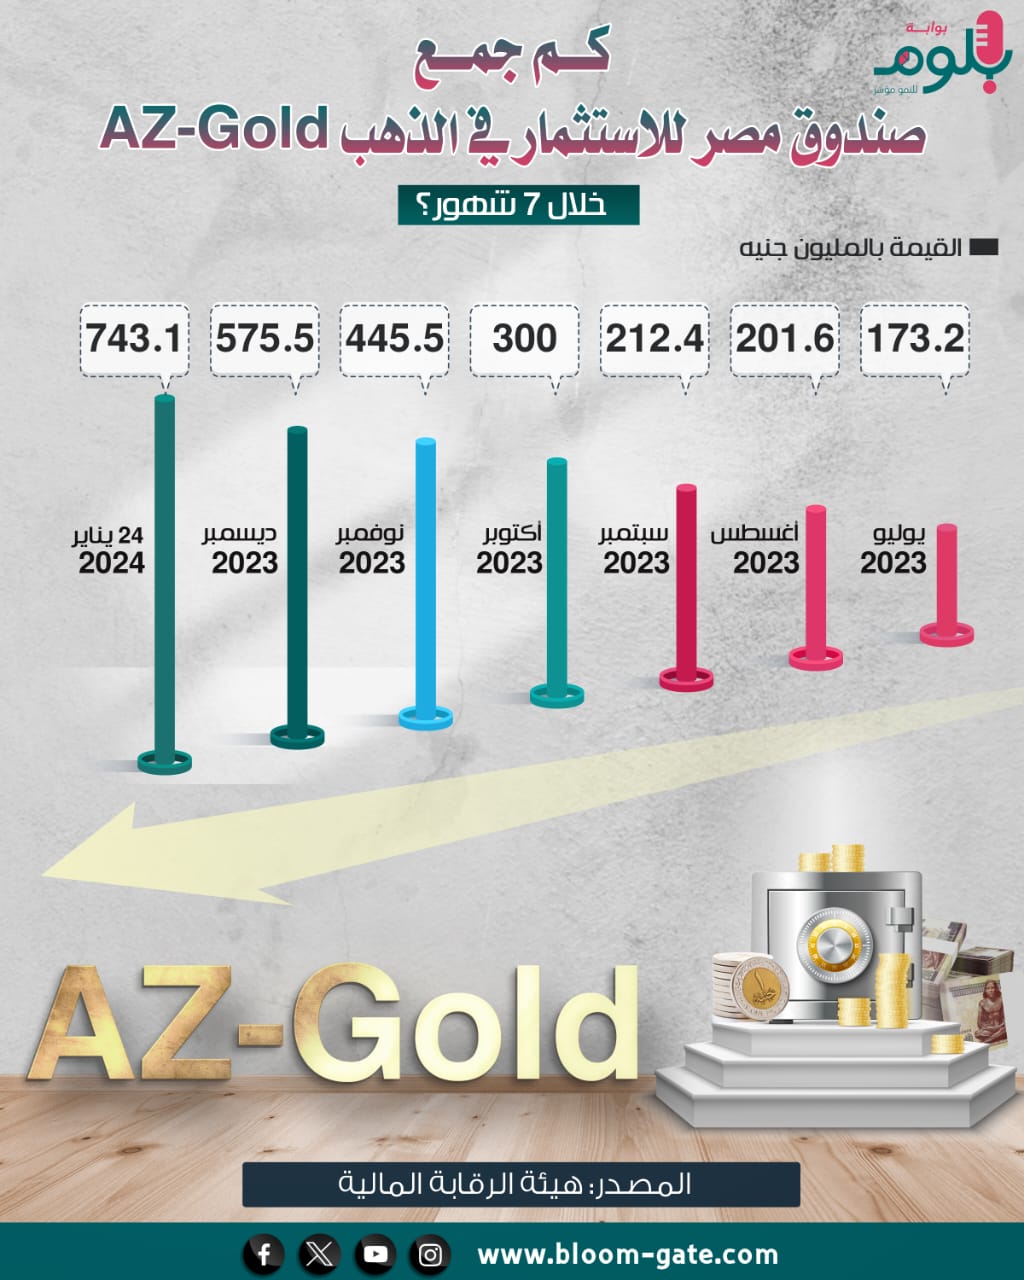 كم جمع صندوق مصر للاستثمار في الذهب خلال 7 أشهر؟